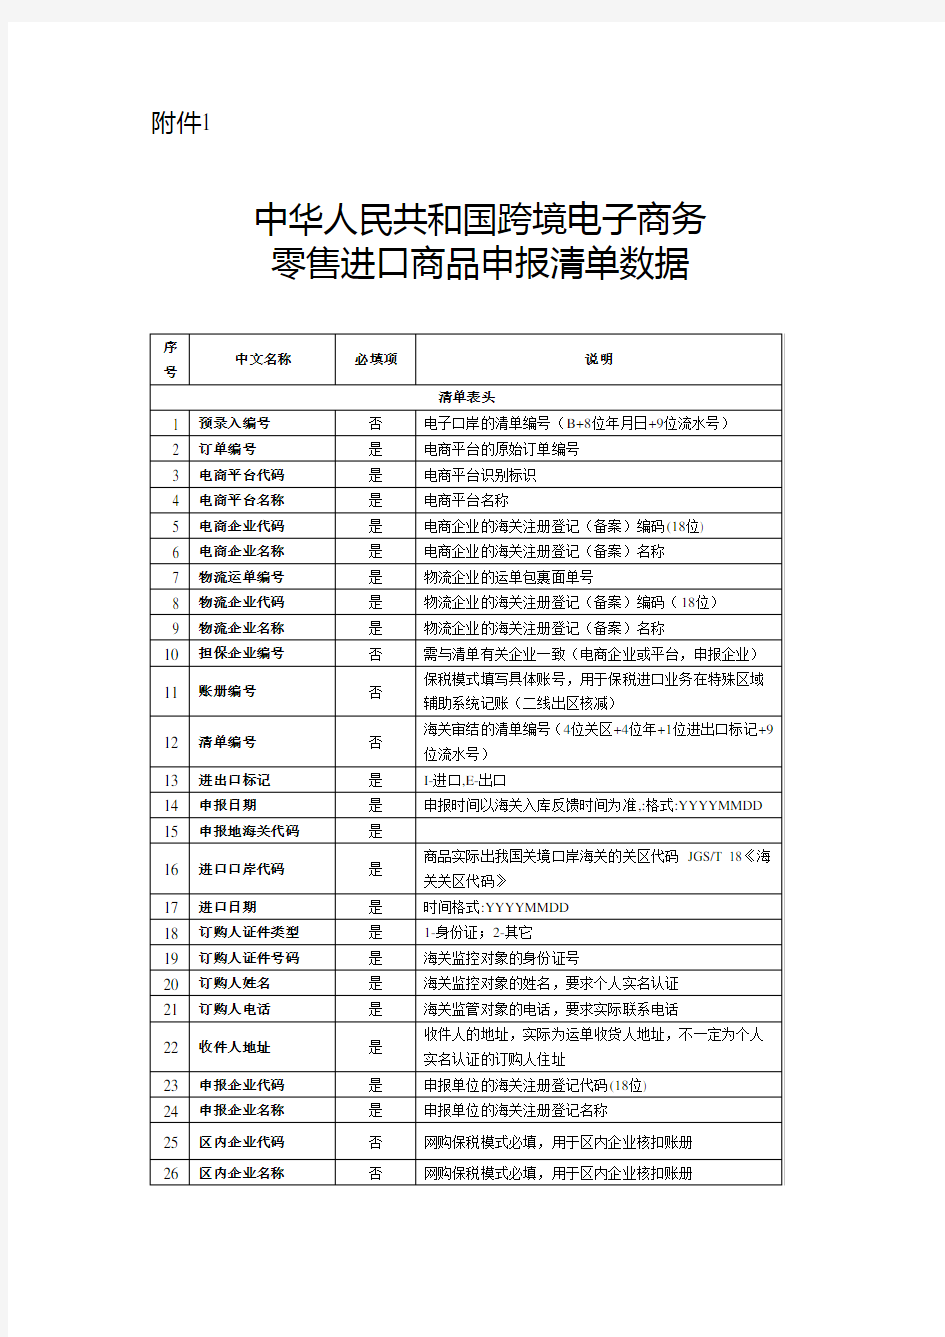 中华人民共和国跨境电子商务零售进口商品申报清单数据